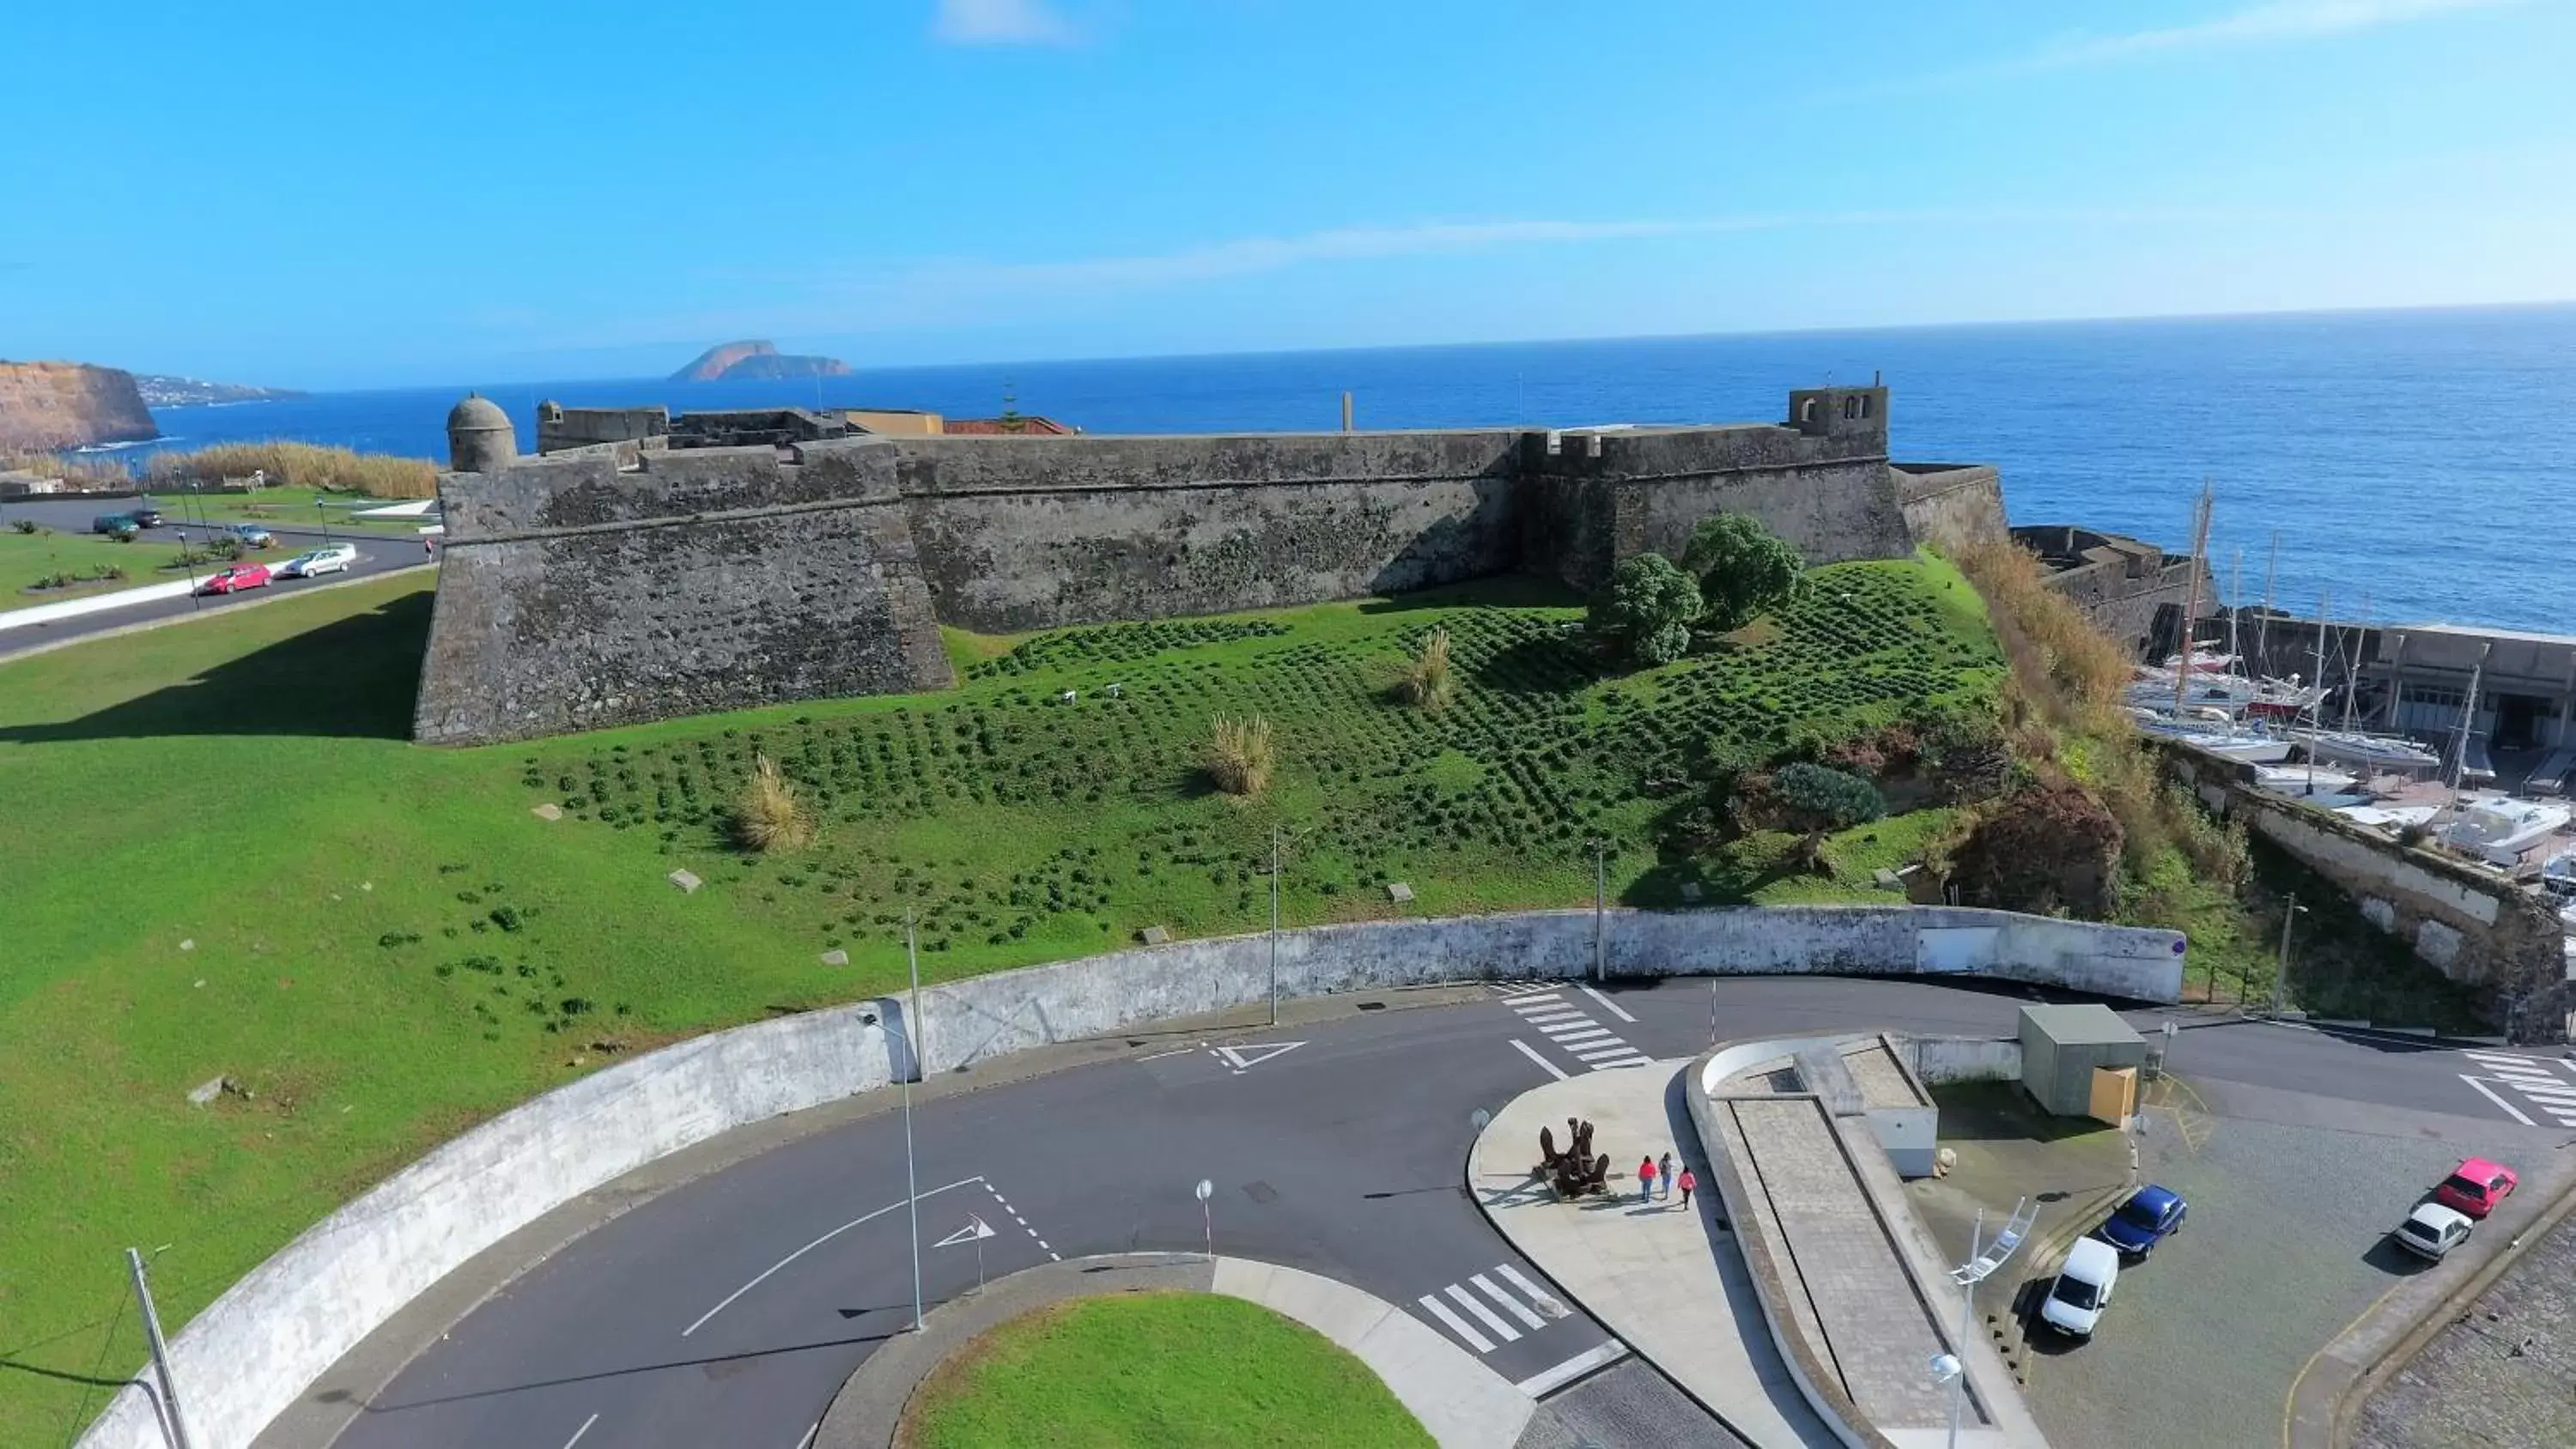 Bird's eye view, Bird's-eye View in Pousada de Angra do Heroismo Castelo de S. Sebastiao